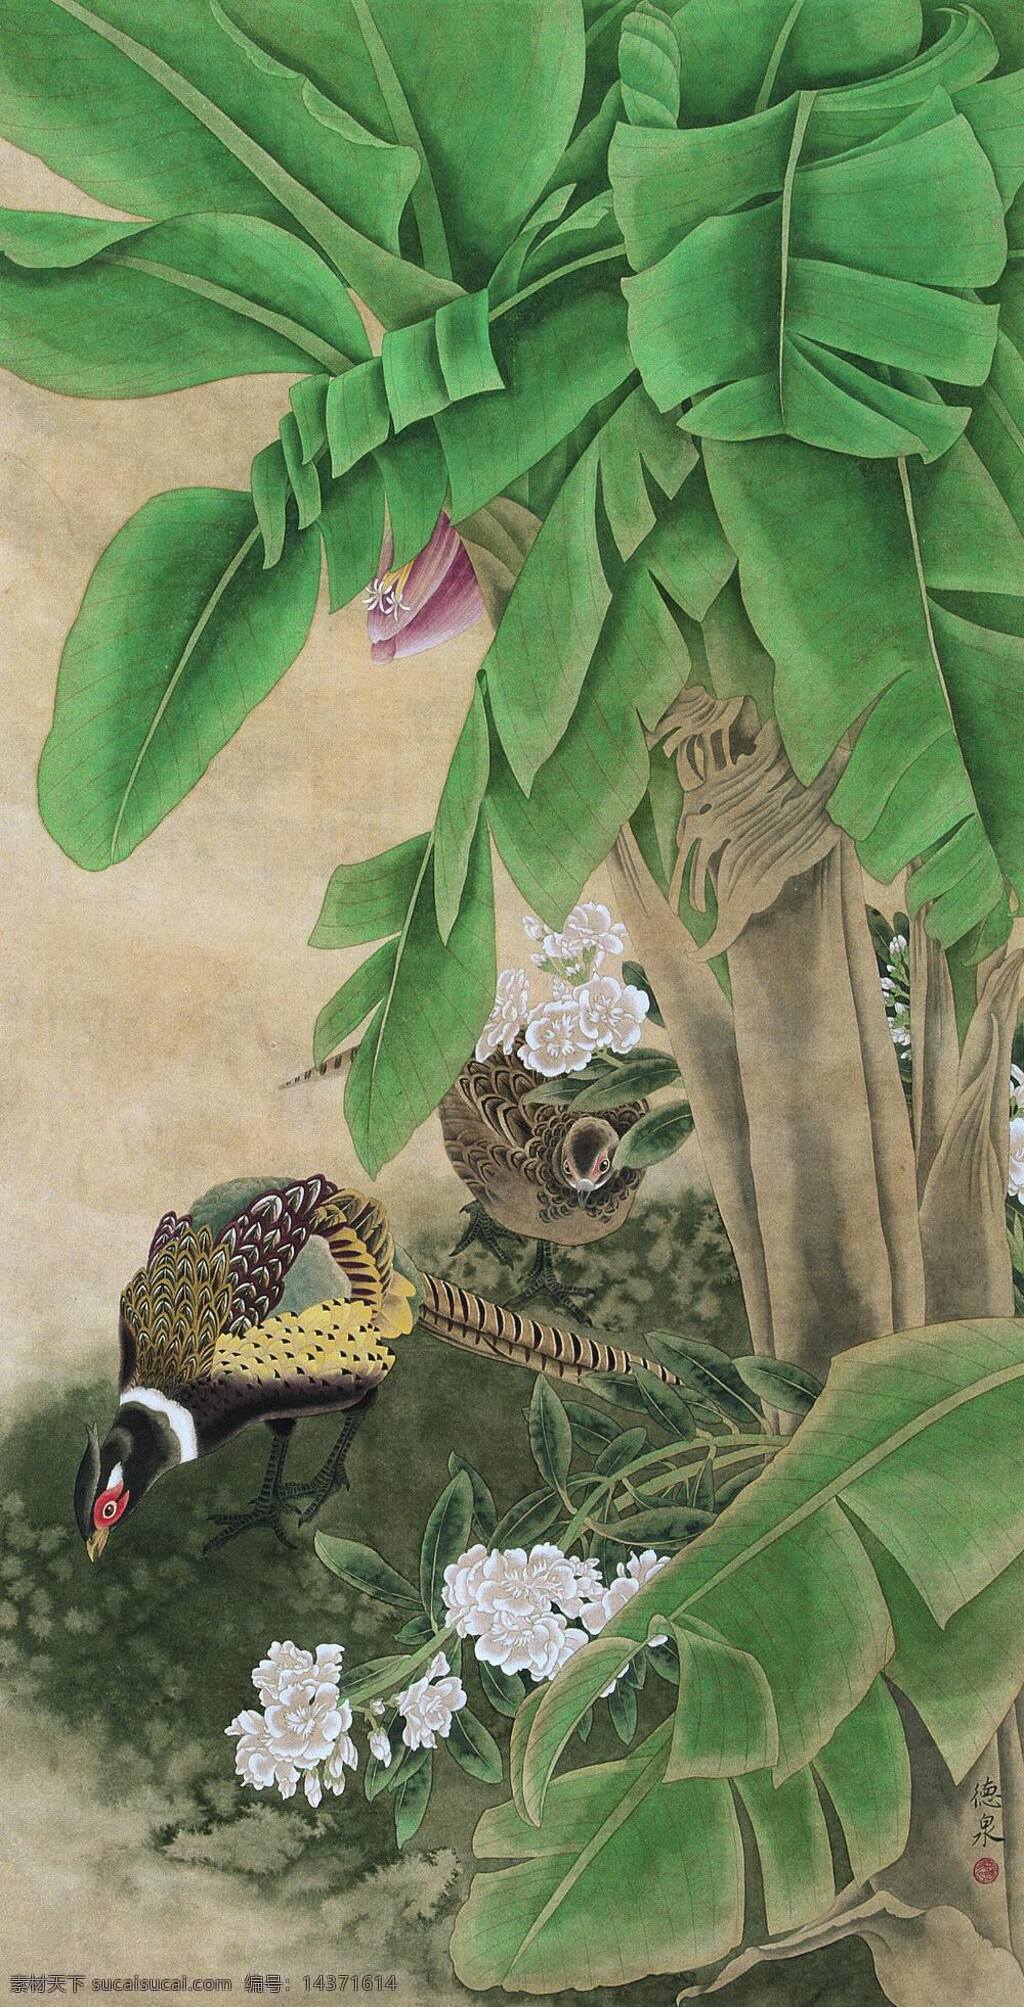 锦鸡芭蕉 锦鸡 芭蕉 热带雨林 工笔画 花鸟画 国画 张德泉 绘画书法 文化艺术